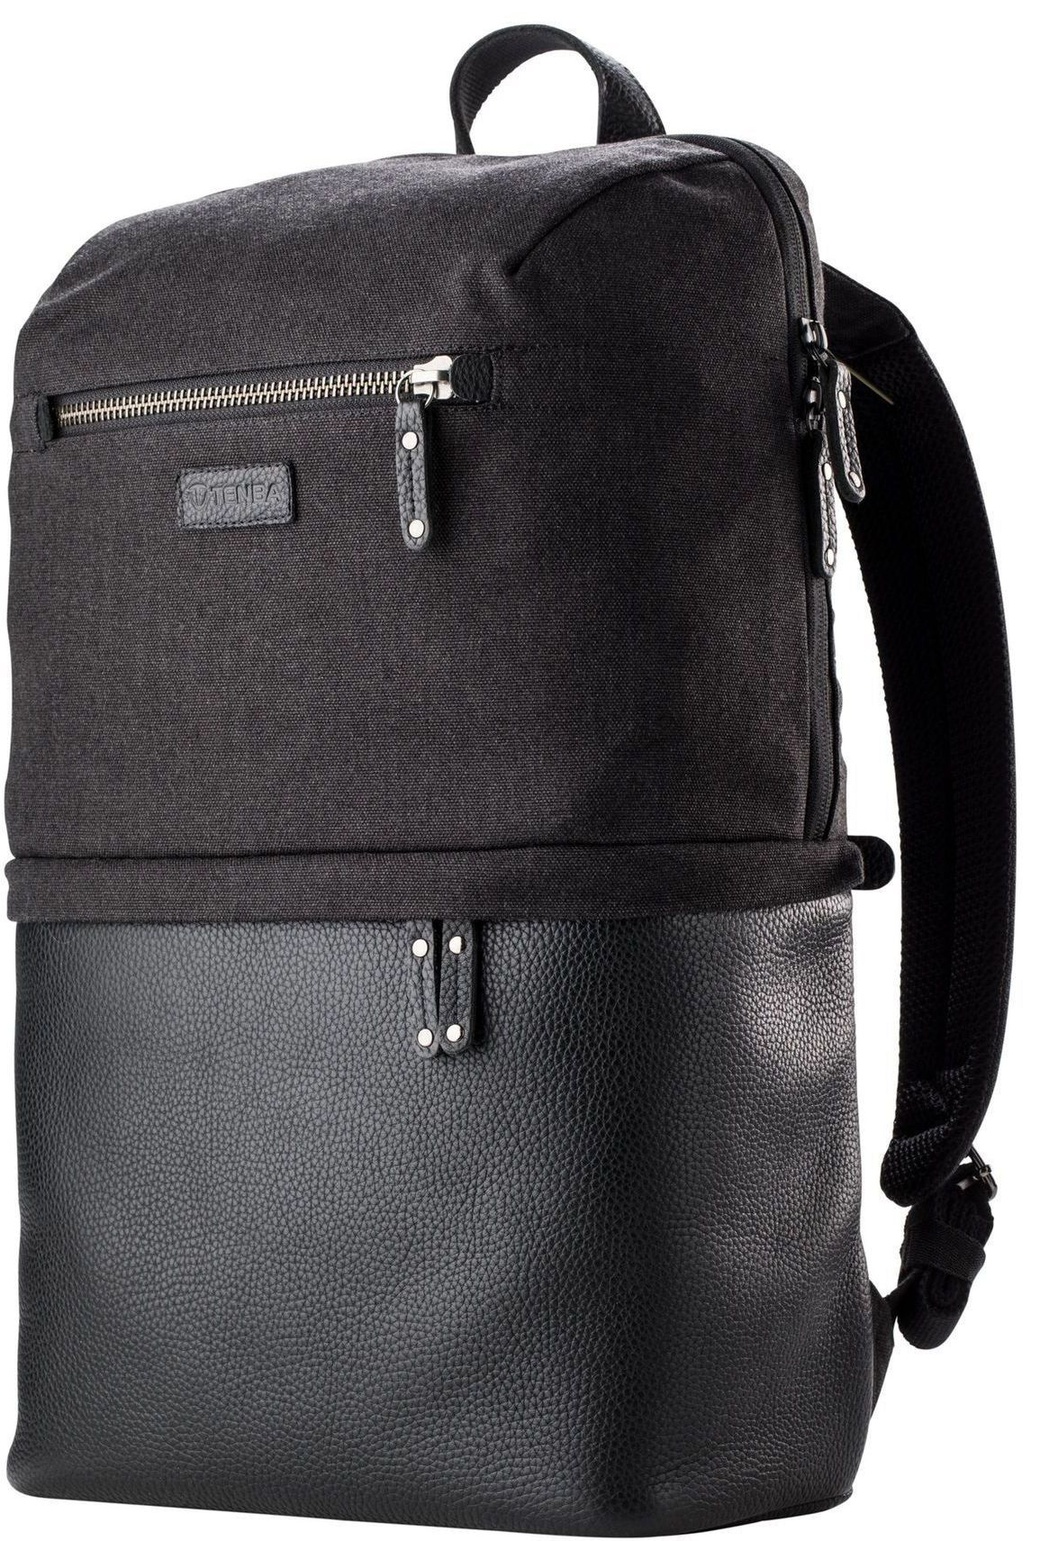 Рюкзак Tenba Cooper Backpack D-SLR для фототехники фото